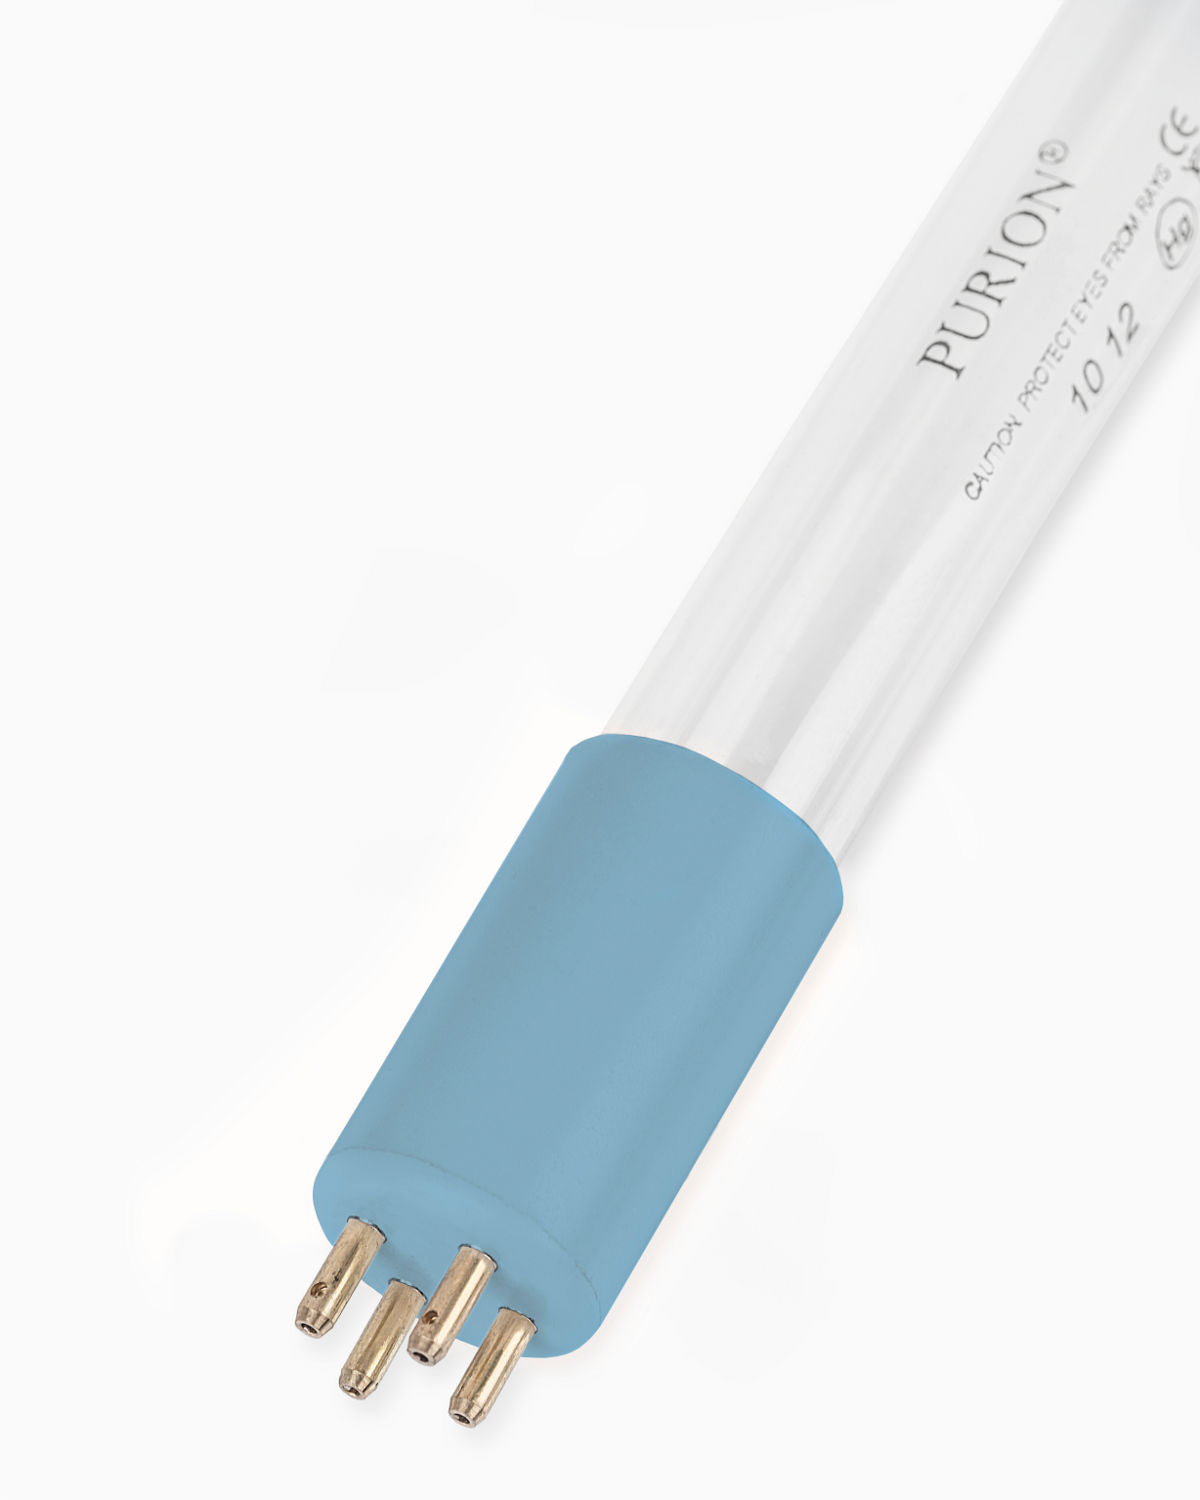 Eine PURION IBC Universal 36W SPL BS Blaulichtröhre auf weißem Hintergrund, entworfen für Wasserentnahme von der UV Concept GmbH.